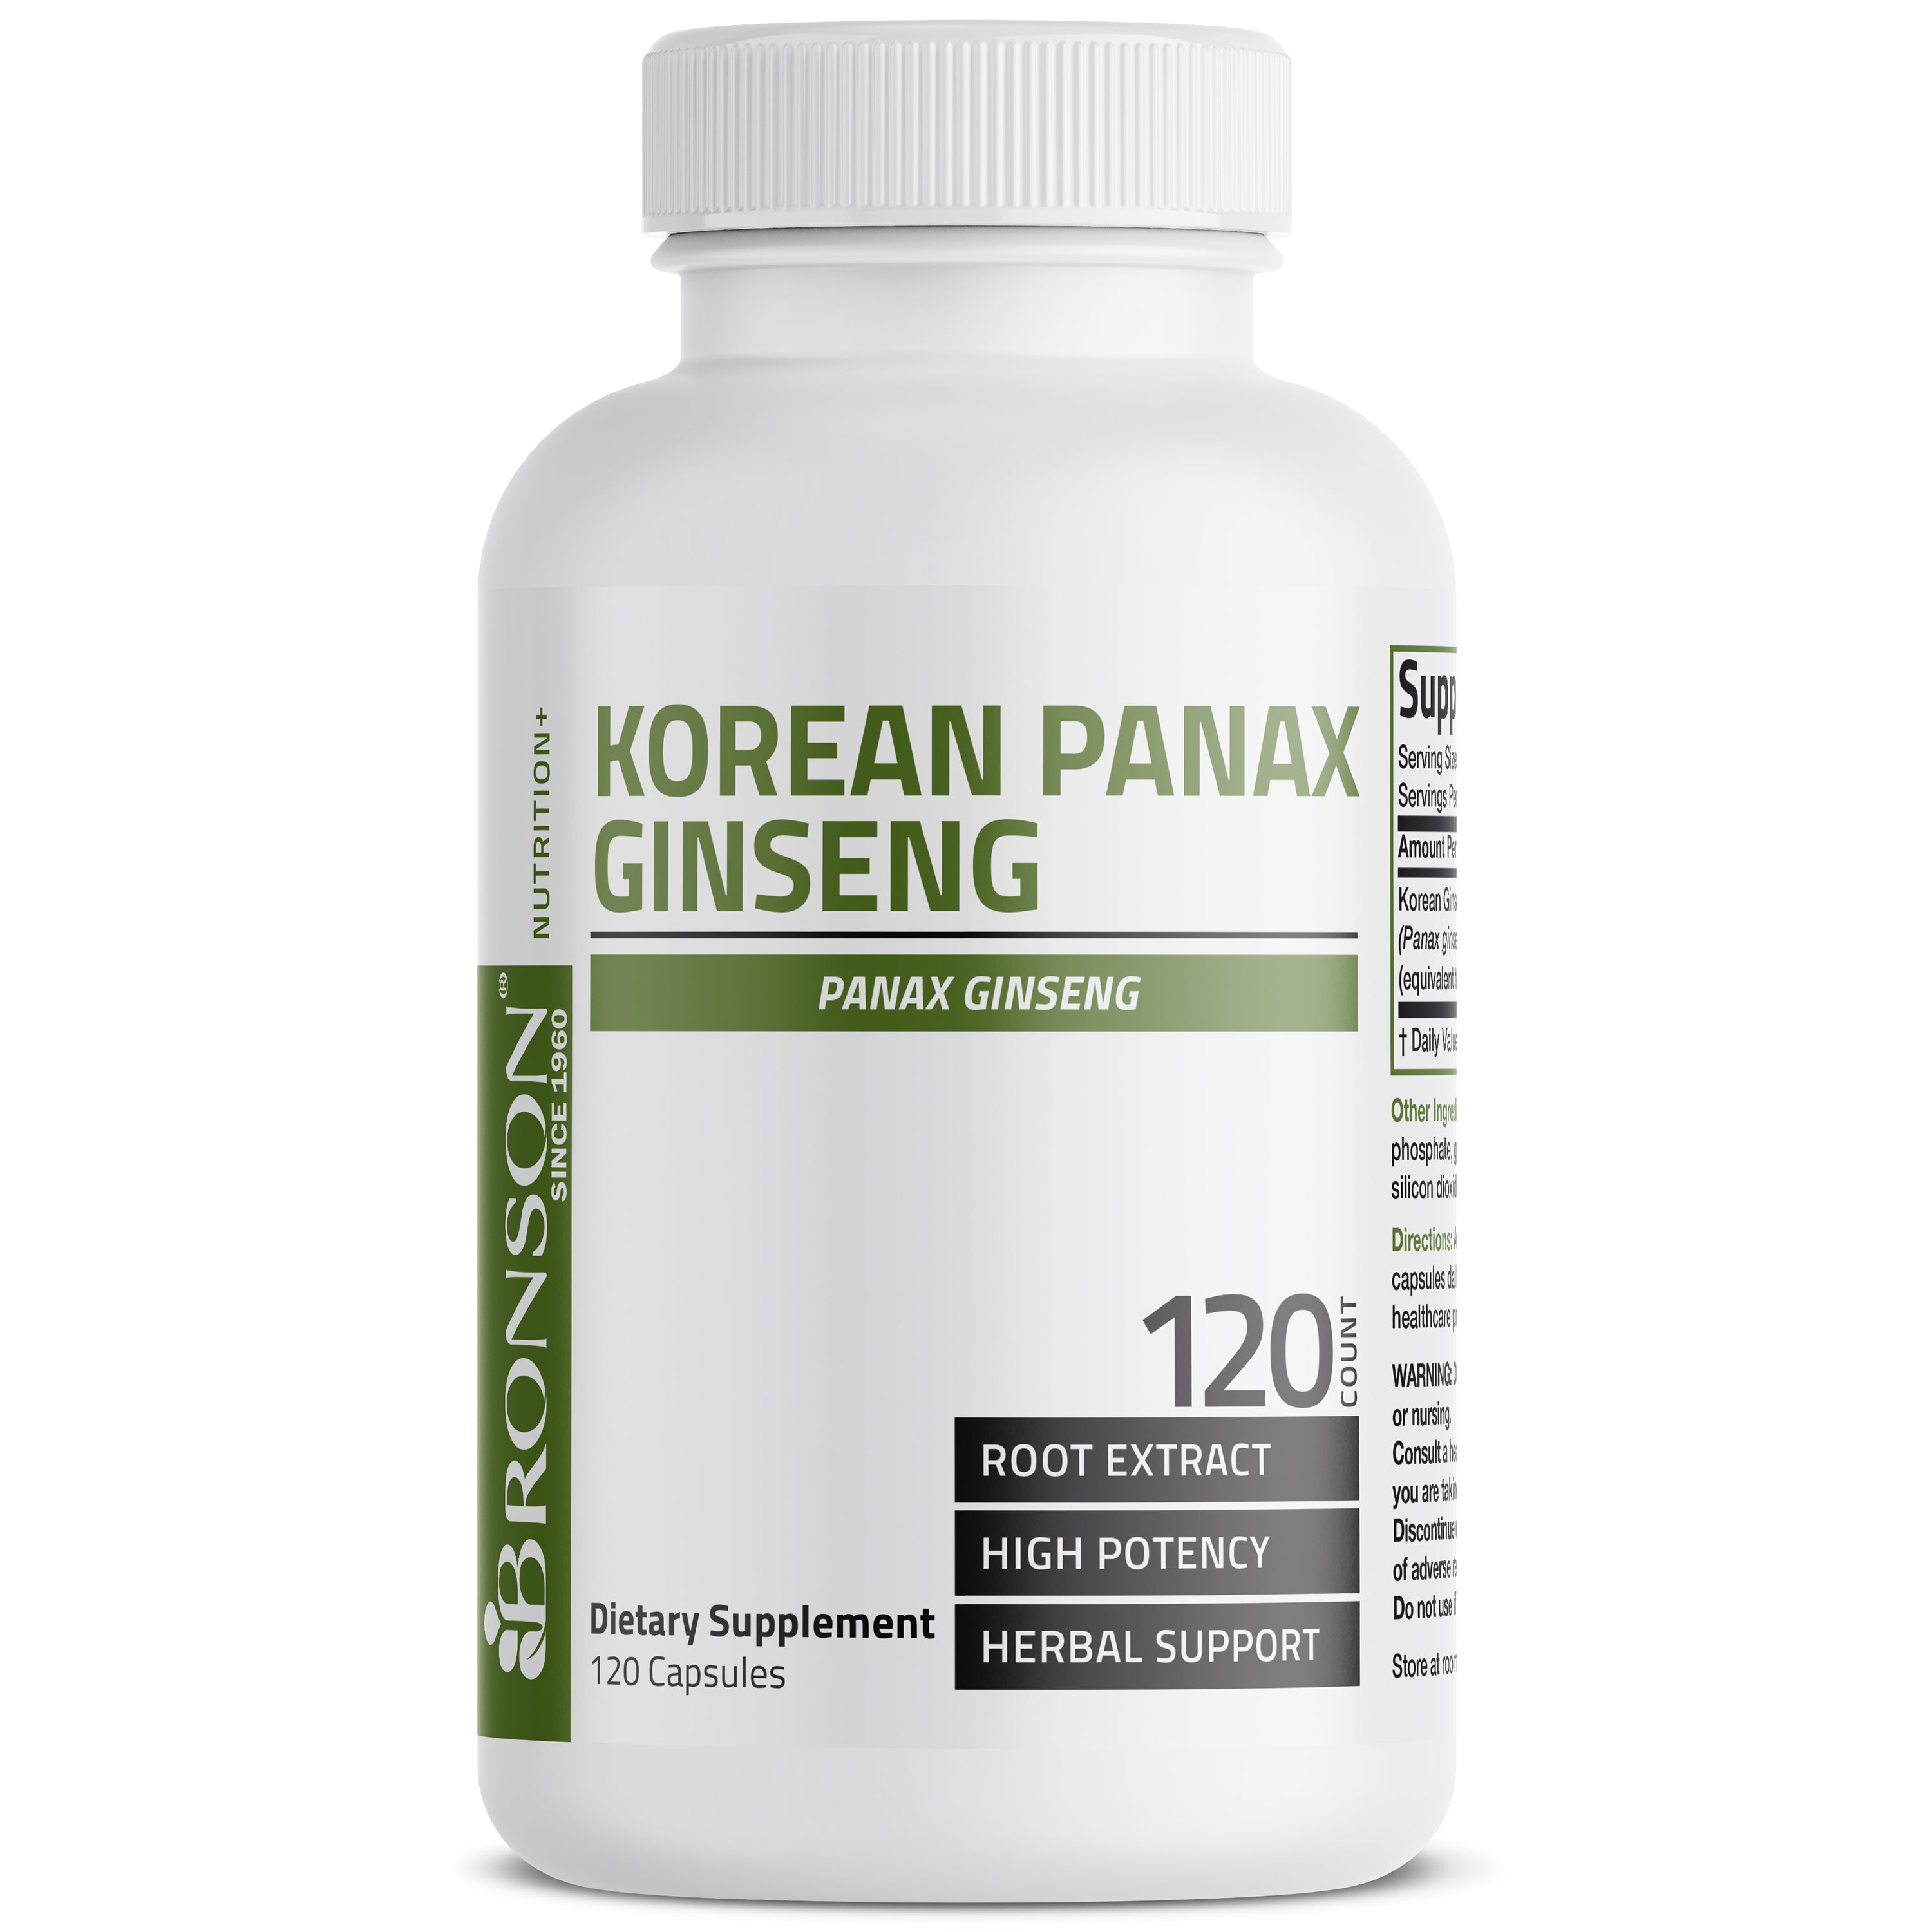 Korean Panax Ginseng - 1,000 mg view 8 of 6